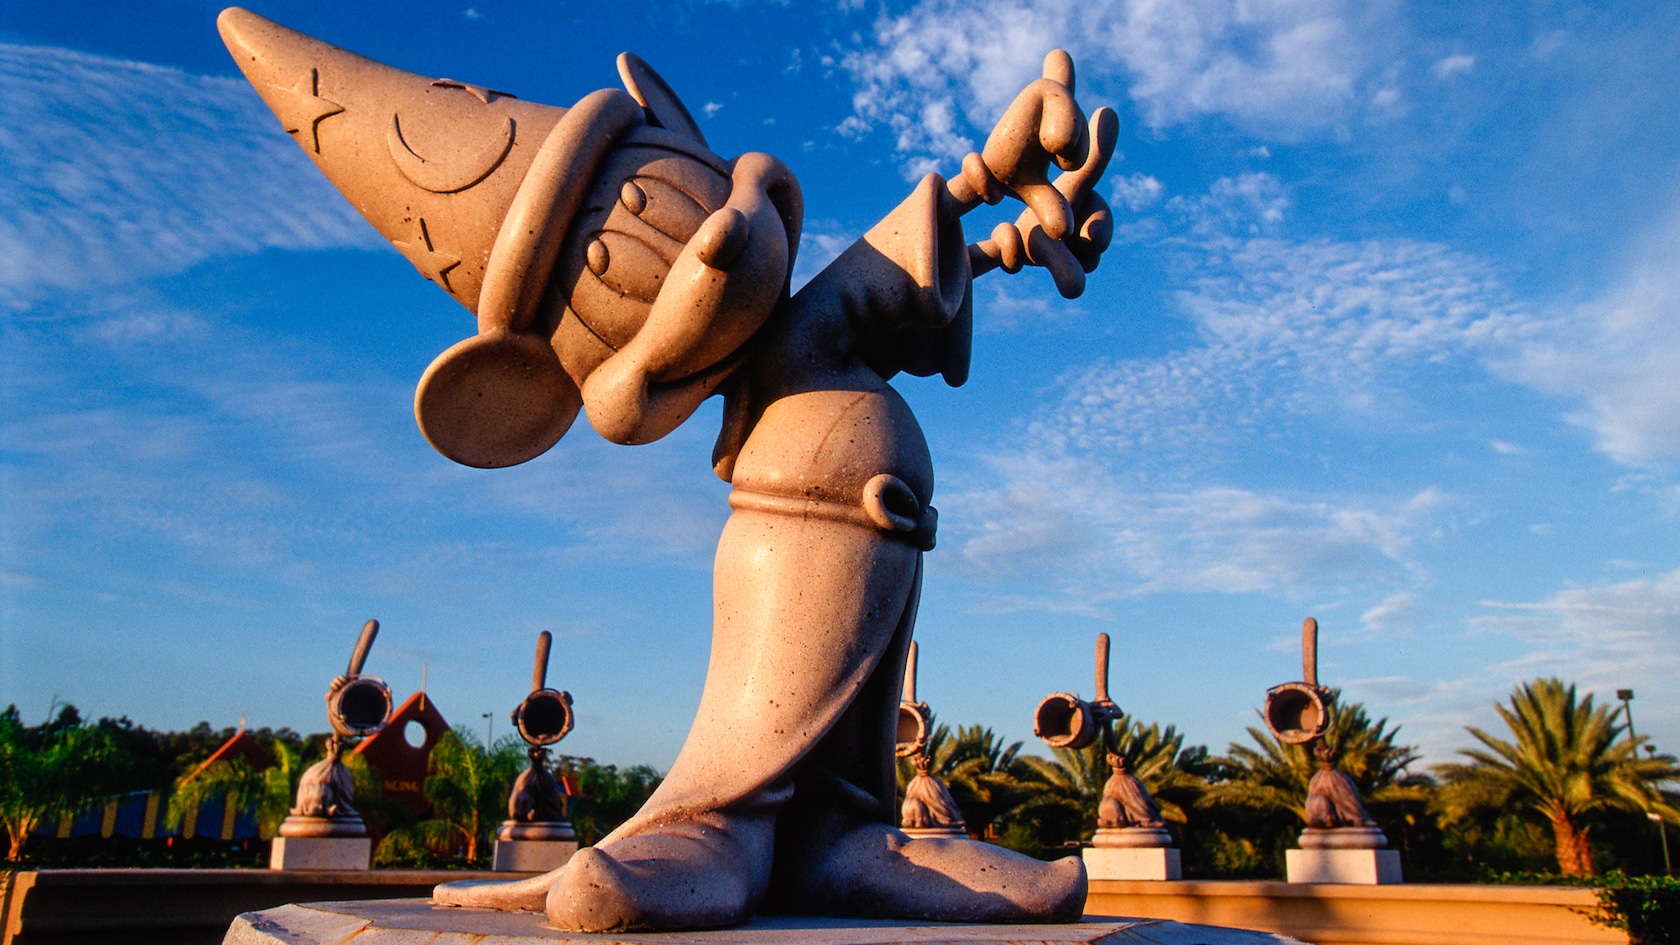 Escultura Mickey "Feiticeiro" no Disney's Fantasia Gardens Miniature Golf Course.